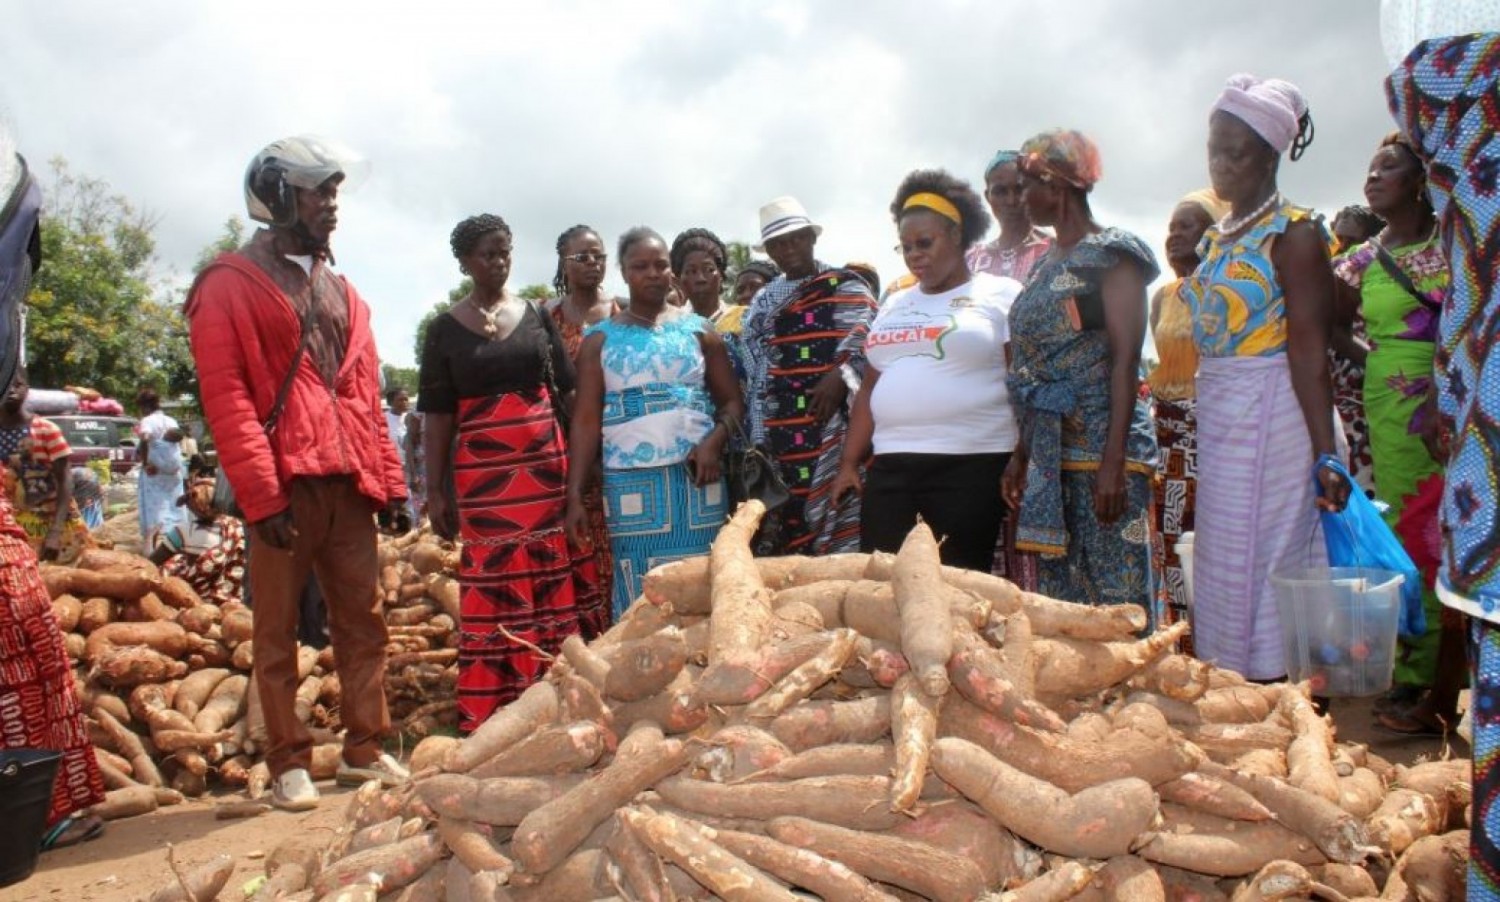 Côte d'Ivoire:   Diabo, une fédération de sociétés coopératives agricoles sollicitent le ministère du Commerce pour la construction d'un marché pour évacuer les produits vers les grandes villes